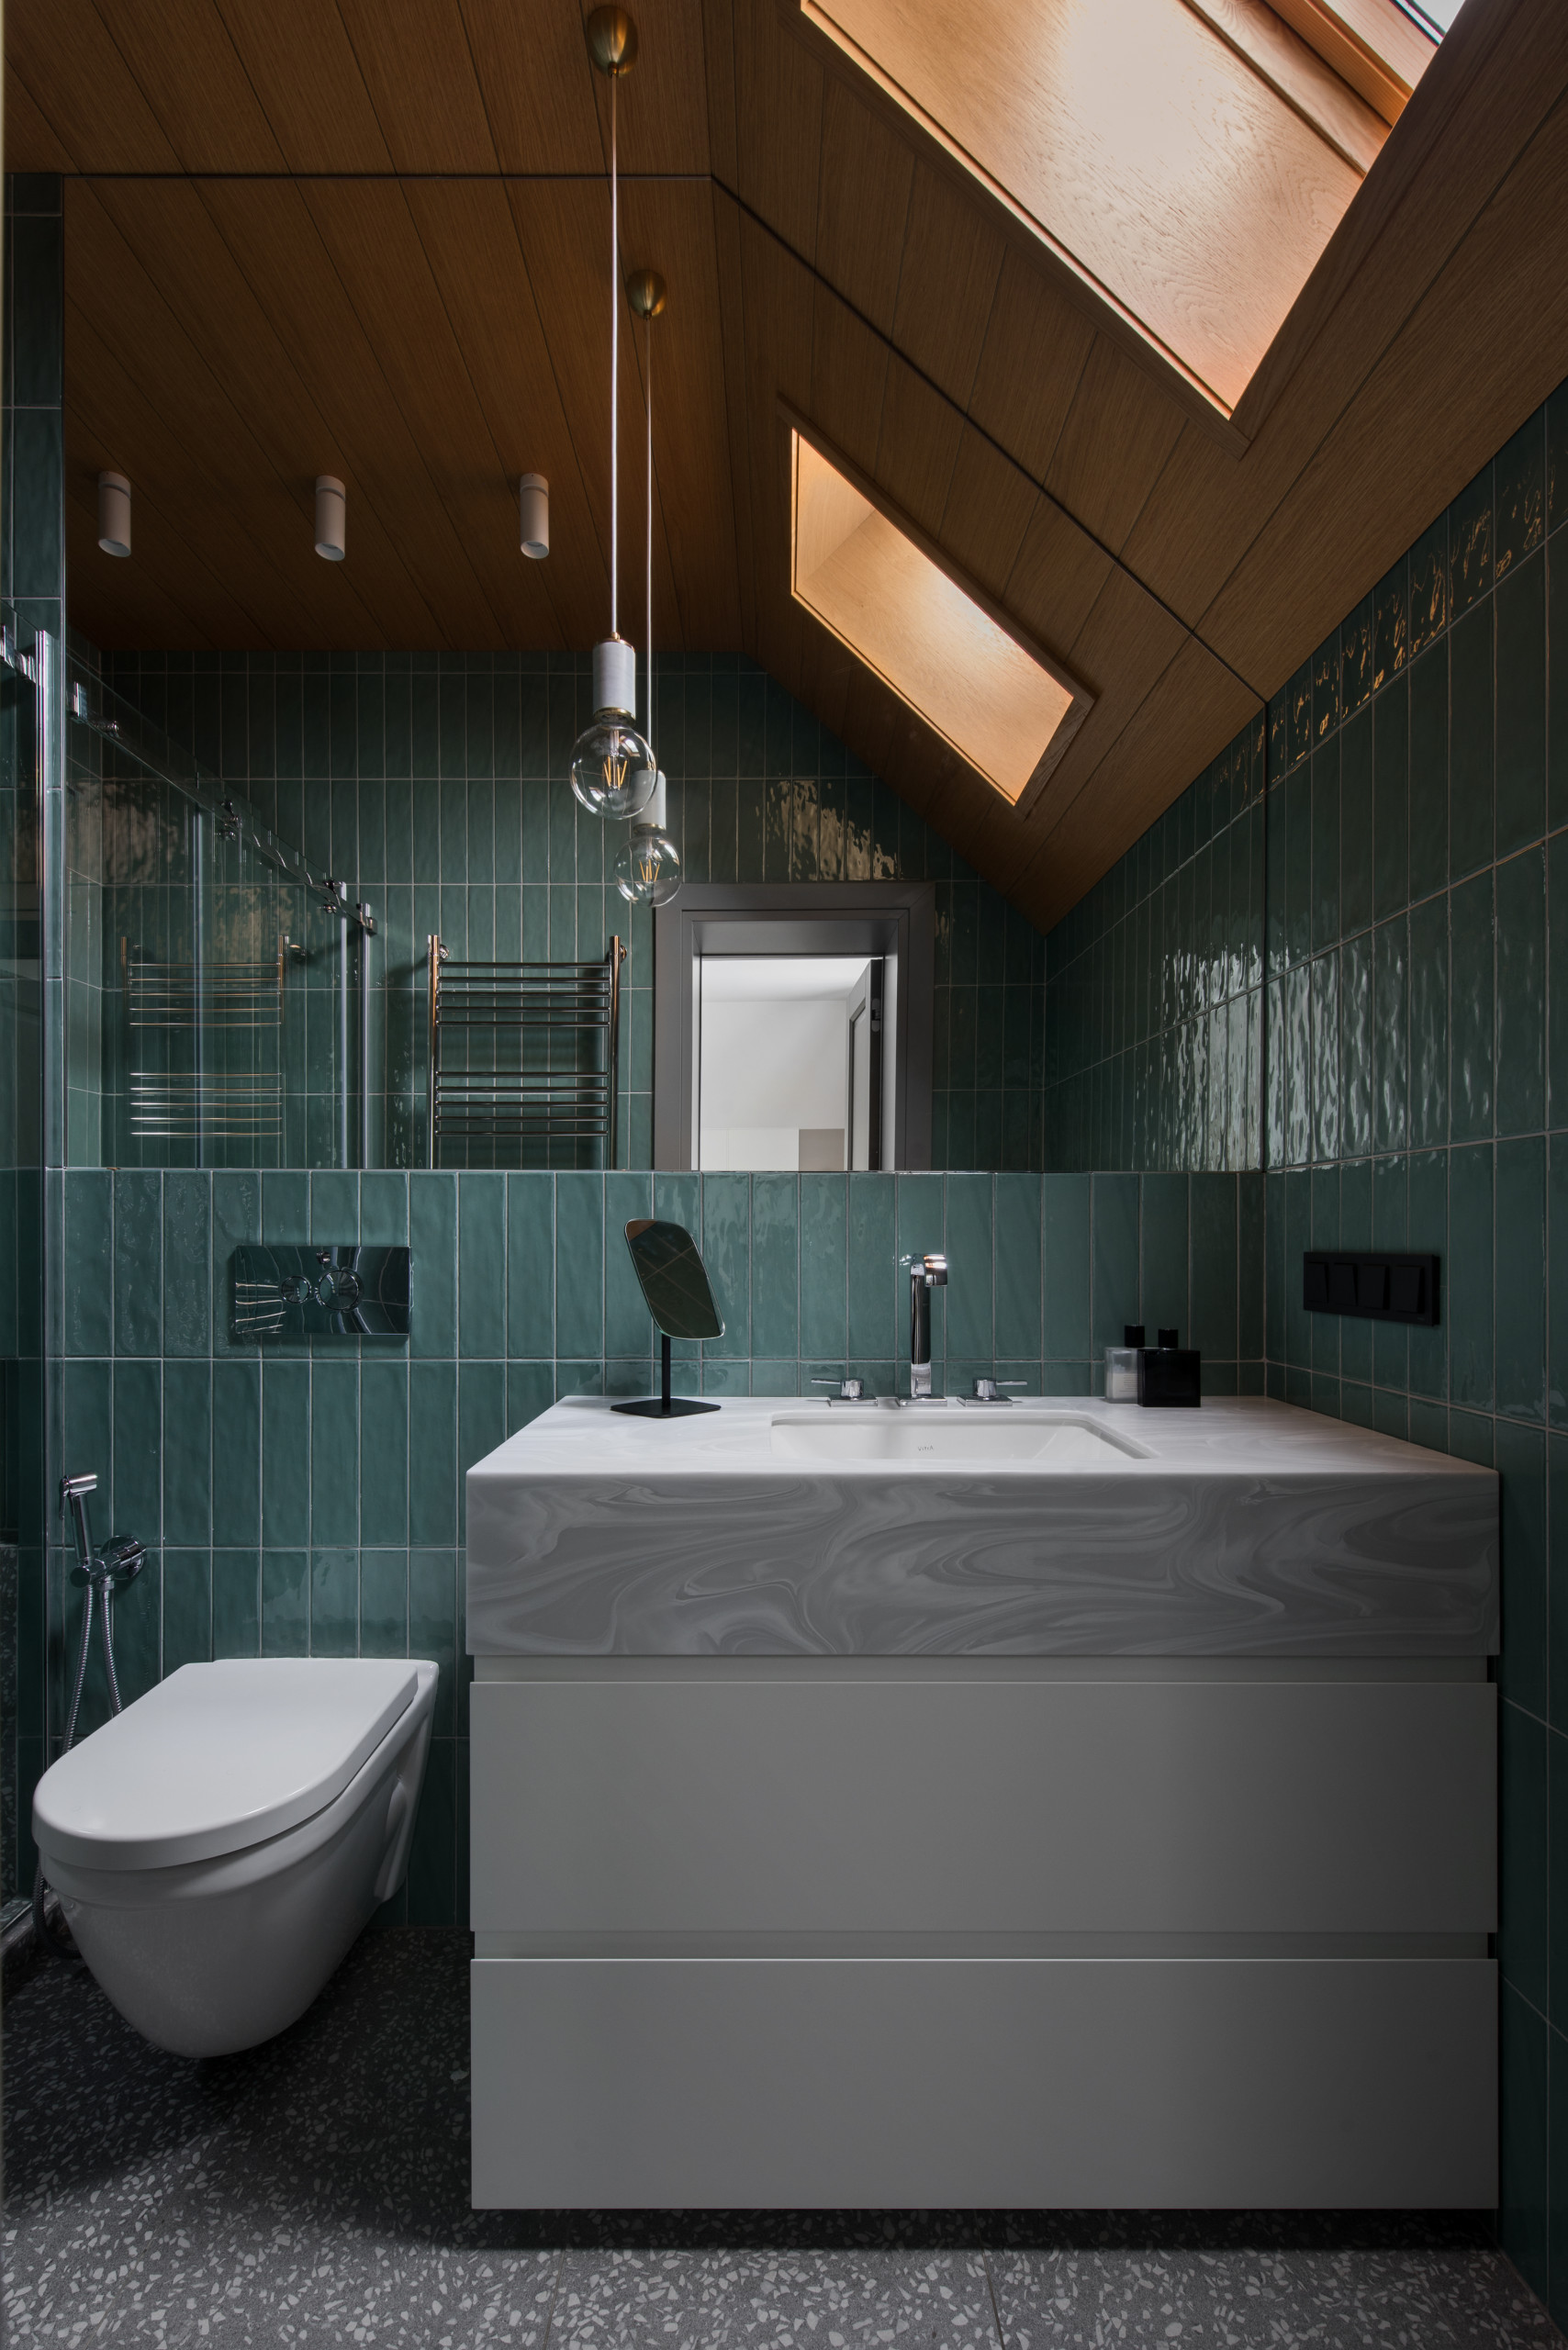 Дизайн маленькой ванной комнаты с туалетом: фото интерьеров | вороковский.рф